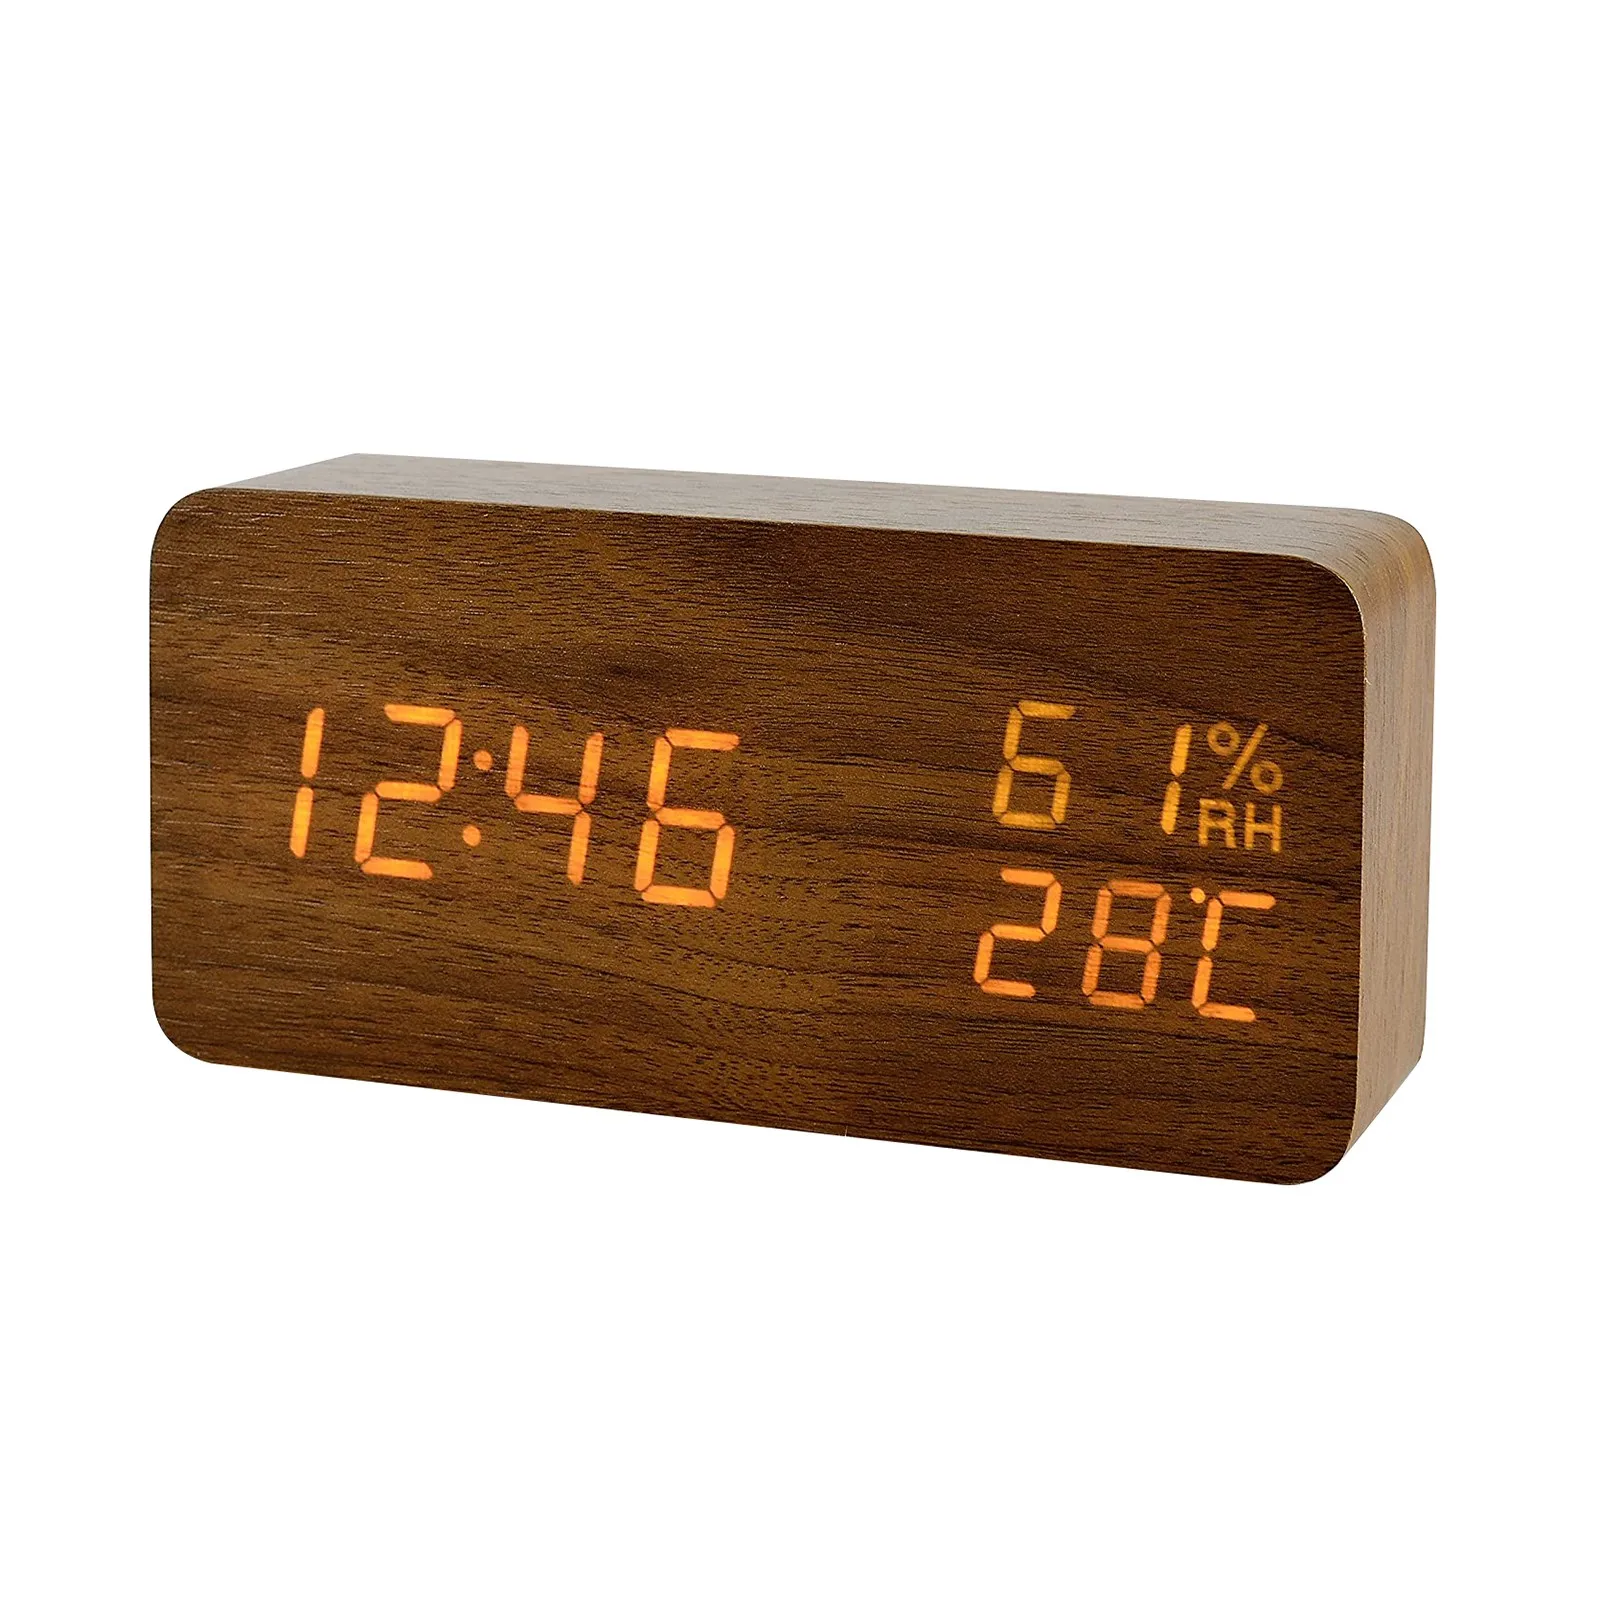 Настольные часы будильник vst. Настольные часы led Wooden Clock электронные. Часы электронные настольные VST-862s. VST светодиодный цифровой будильник. Электронные часы led Wooden Clock VST-883.